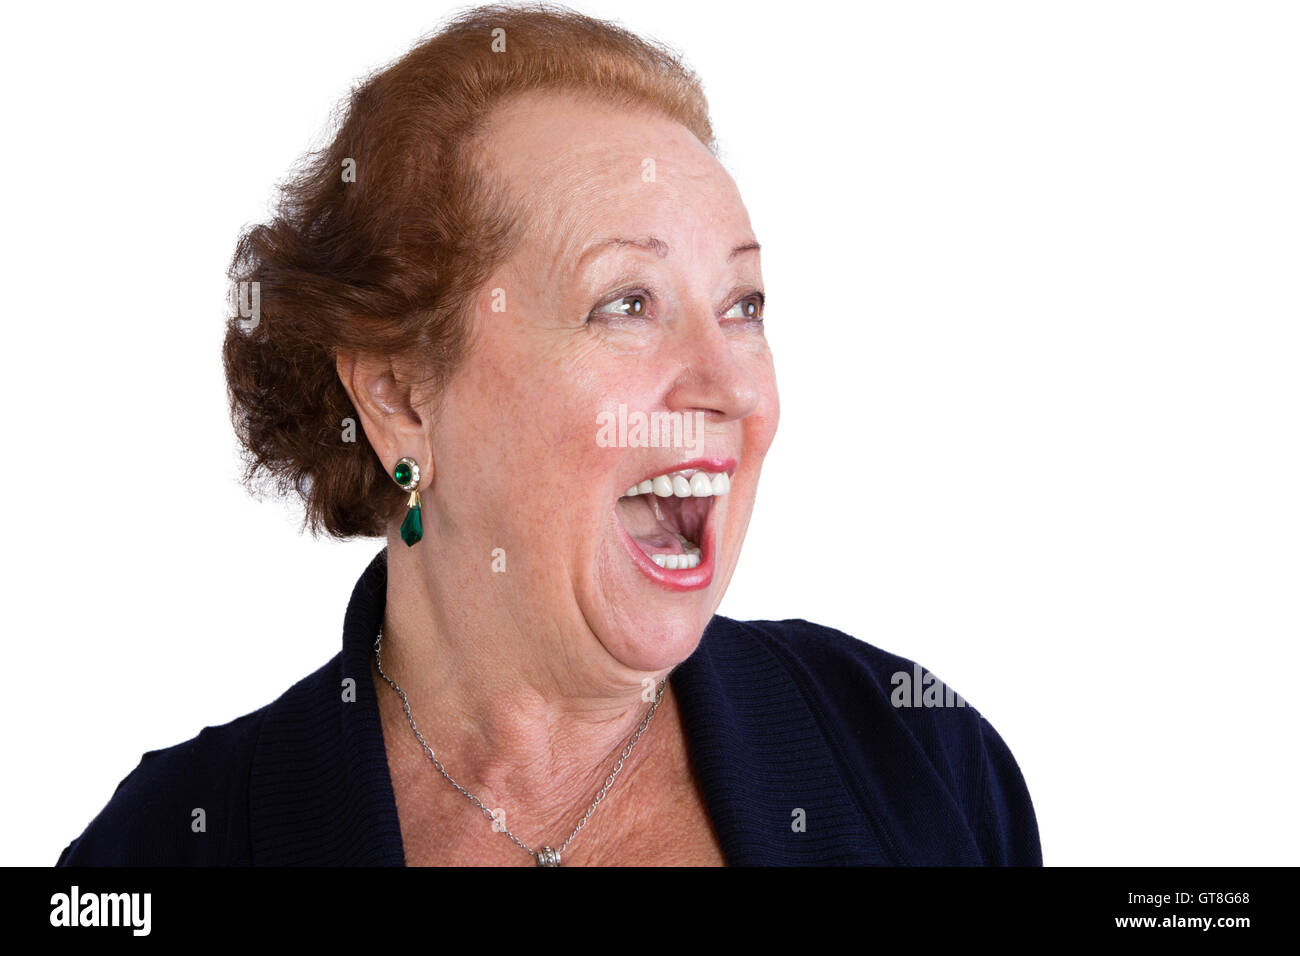 Close up Senior Woman Showing a surpris l'expression du visage avec la bouche ouverte et regardant à droite du cadre, isolé sur W Banque D'Images